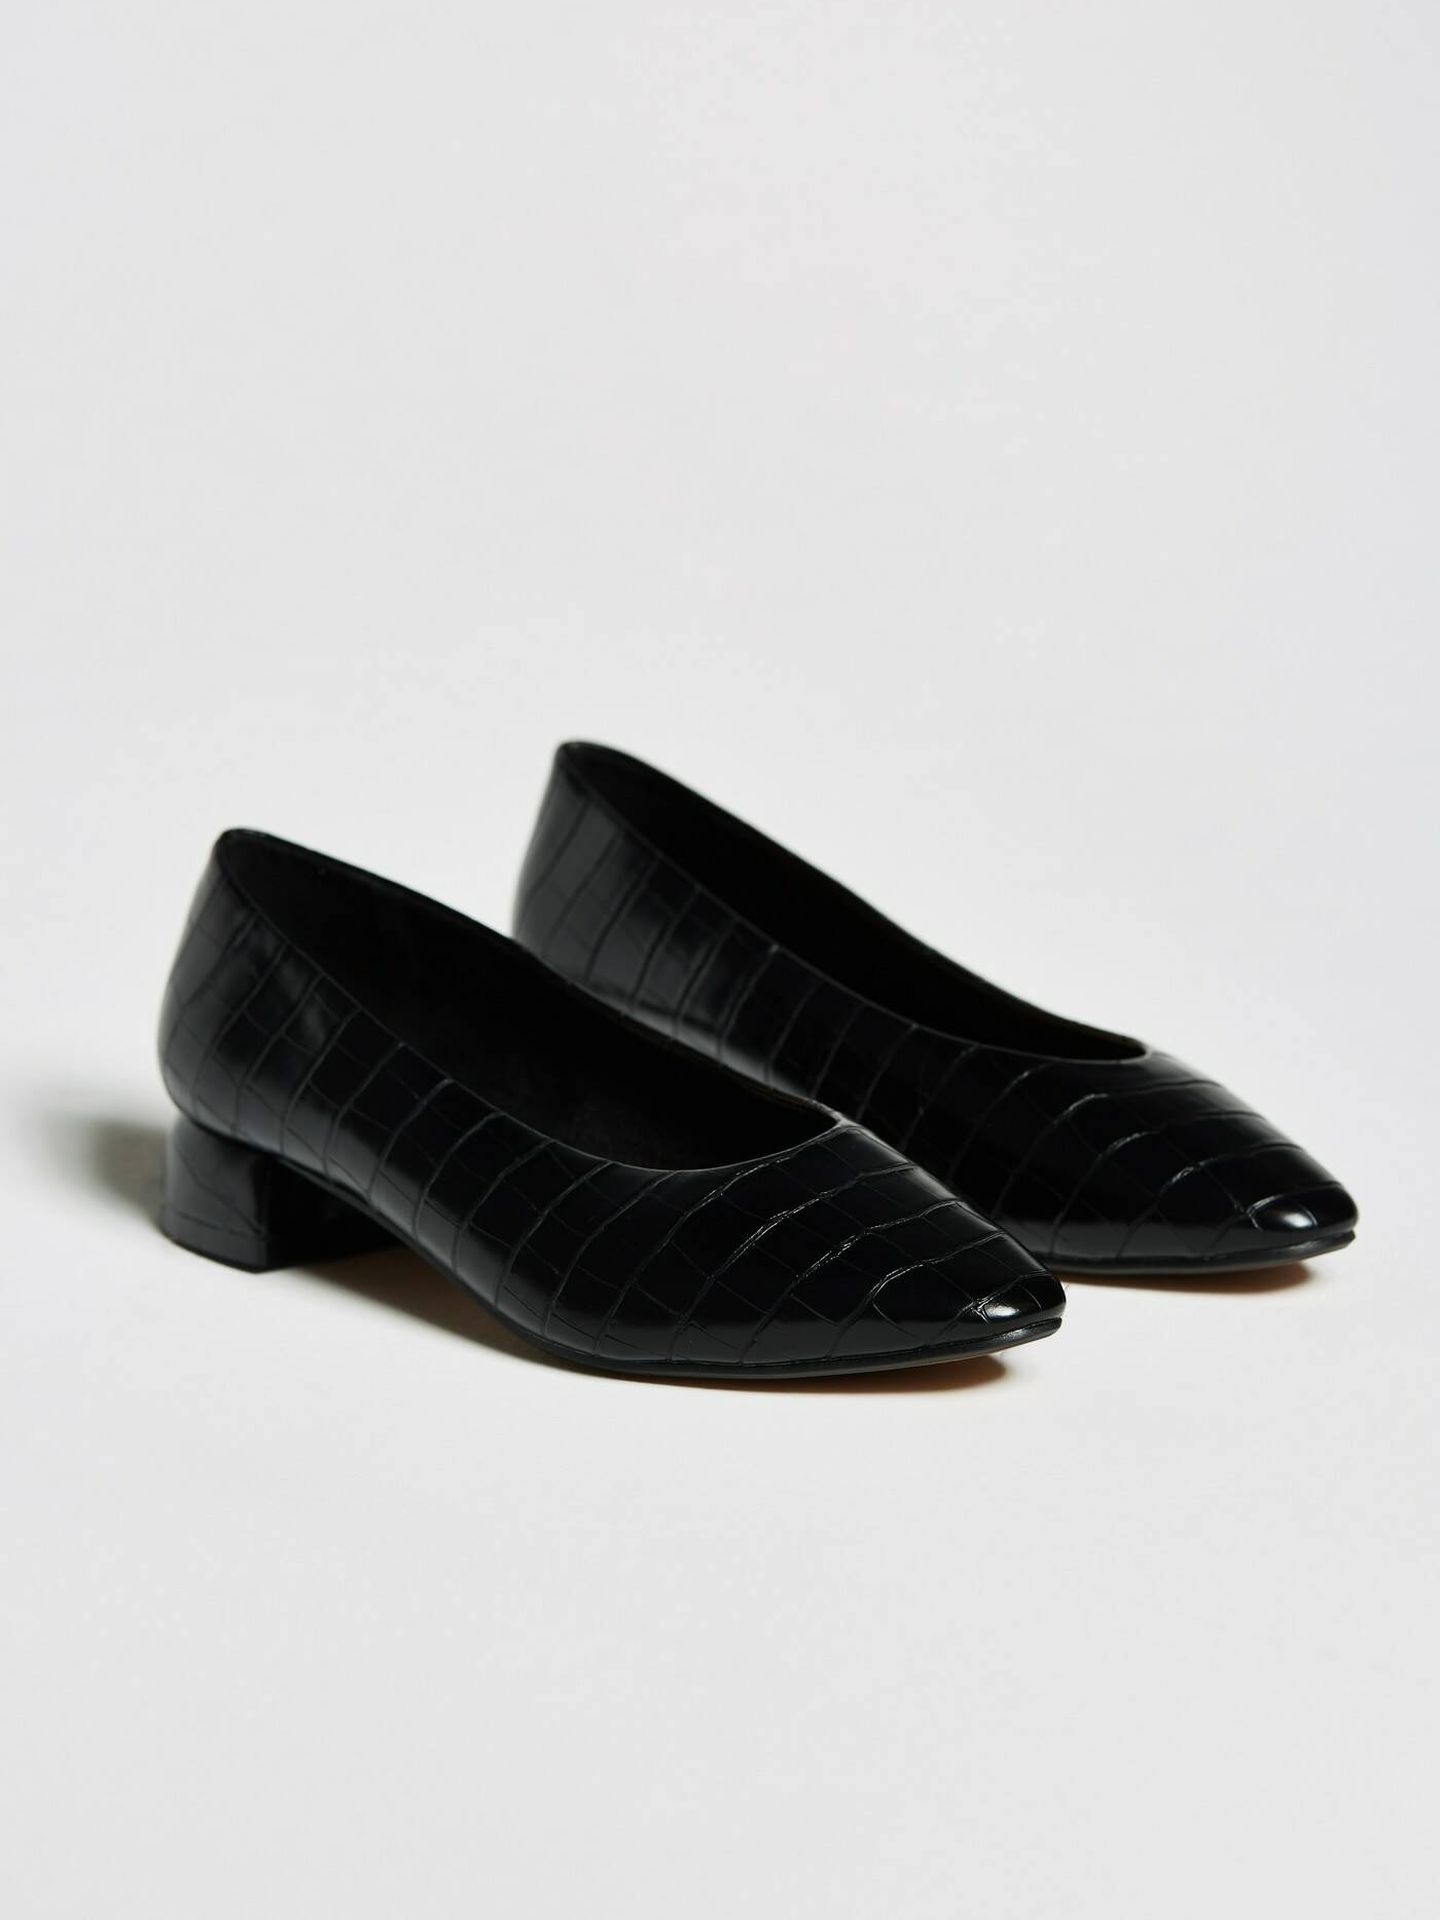 Los zapatos negros de Sfera. (Cortesía/Sfera)